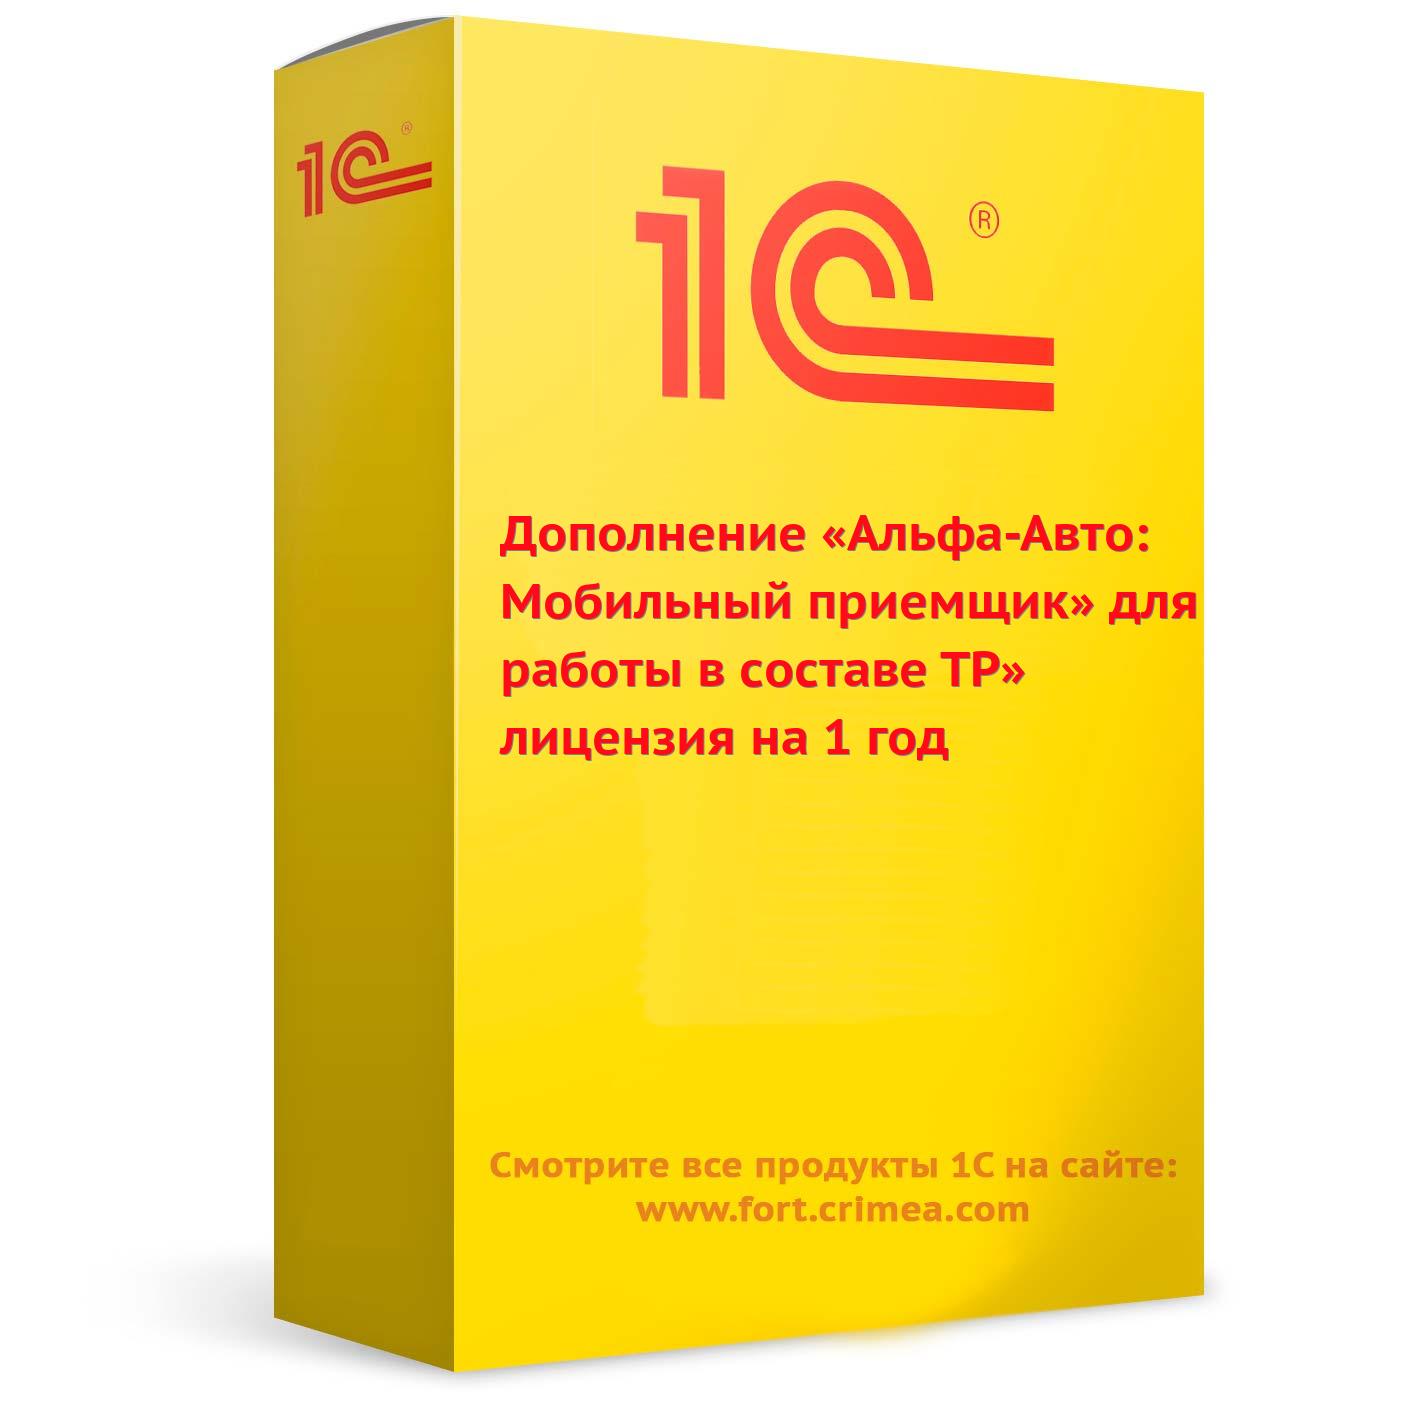 Дополнение «Альфа-Авто: Мобильный приемщик» для работы в составе ТР» лицензия на 1 год. Купить в Симферополе.